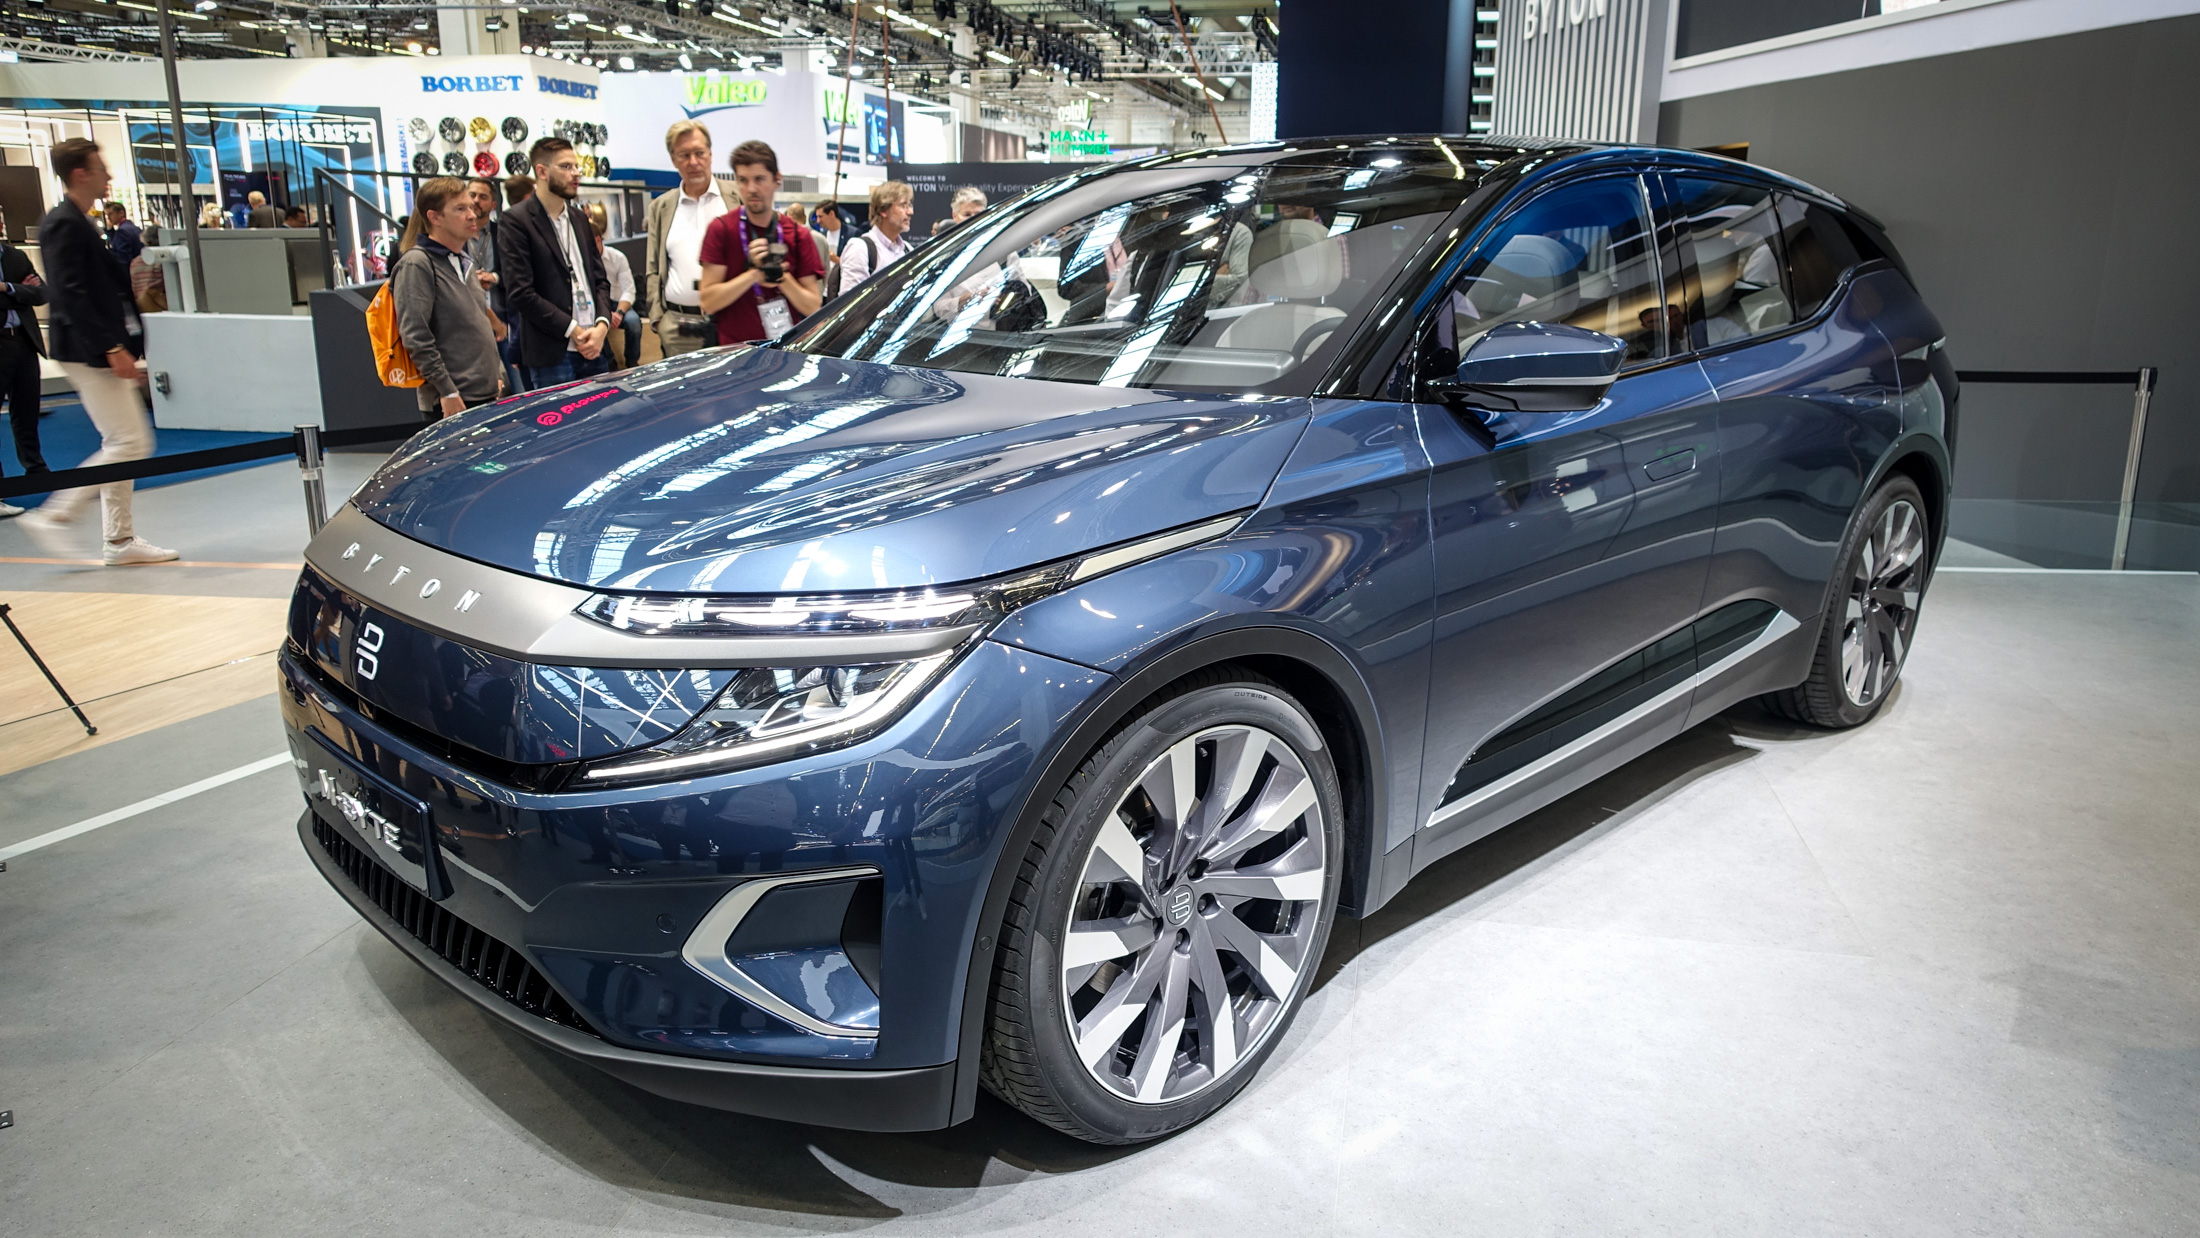 Le SUV électrique du constructeur chinois Byton arrivera en Europe en 2021